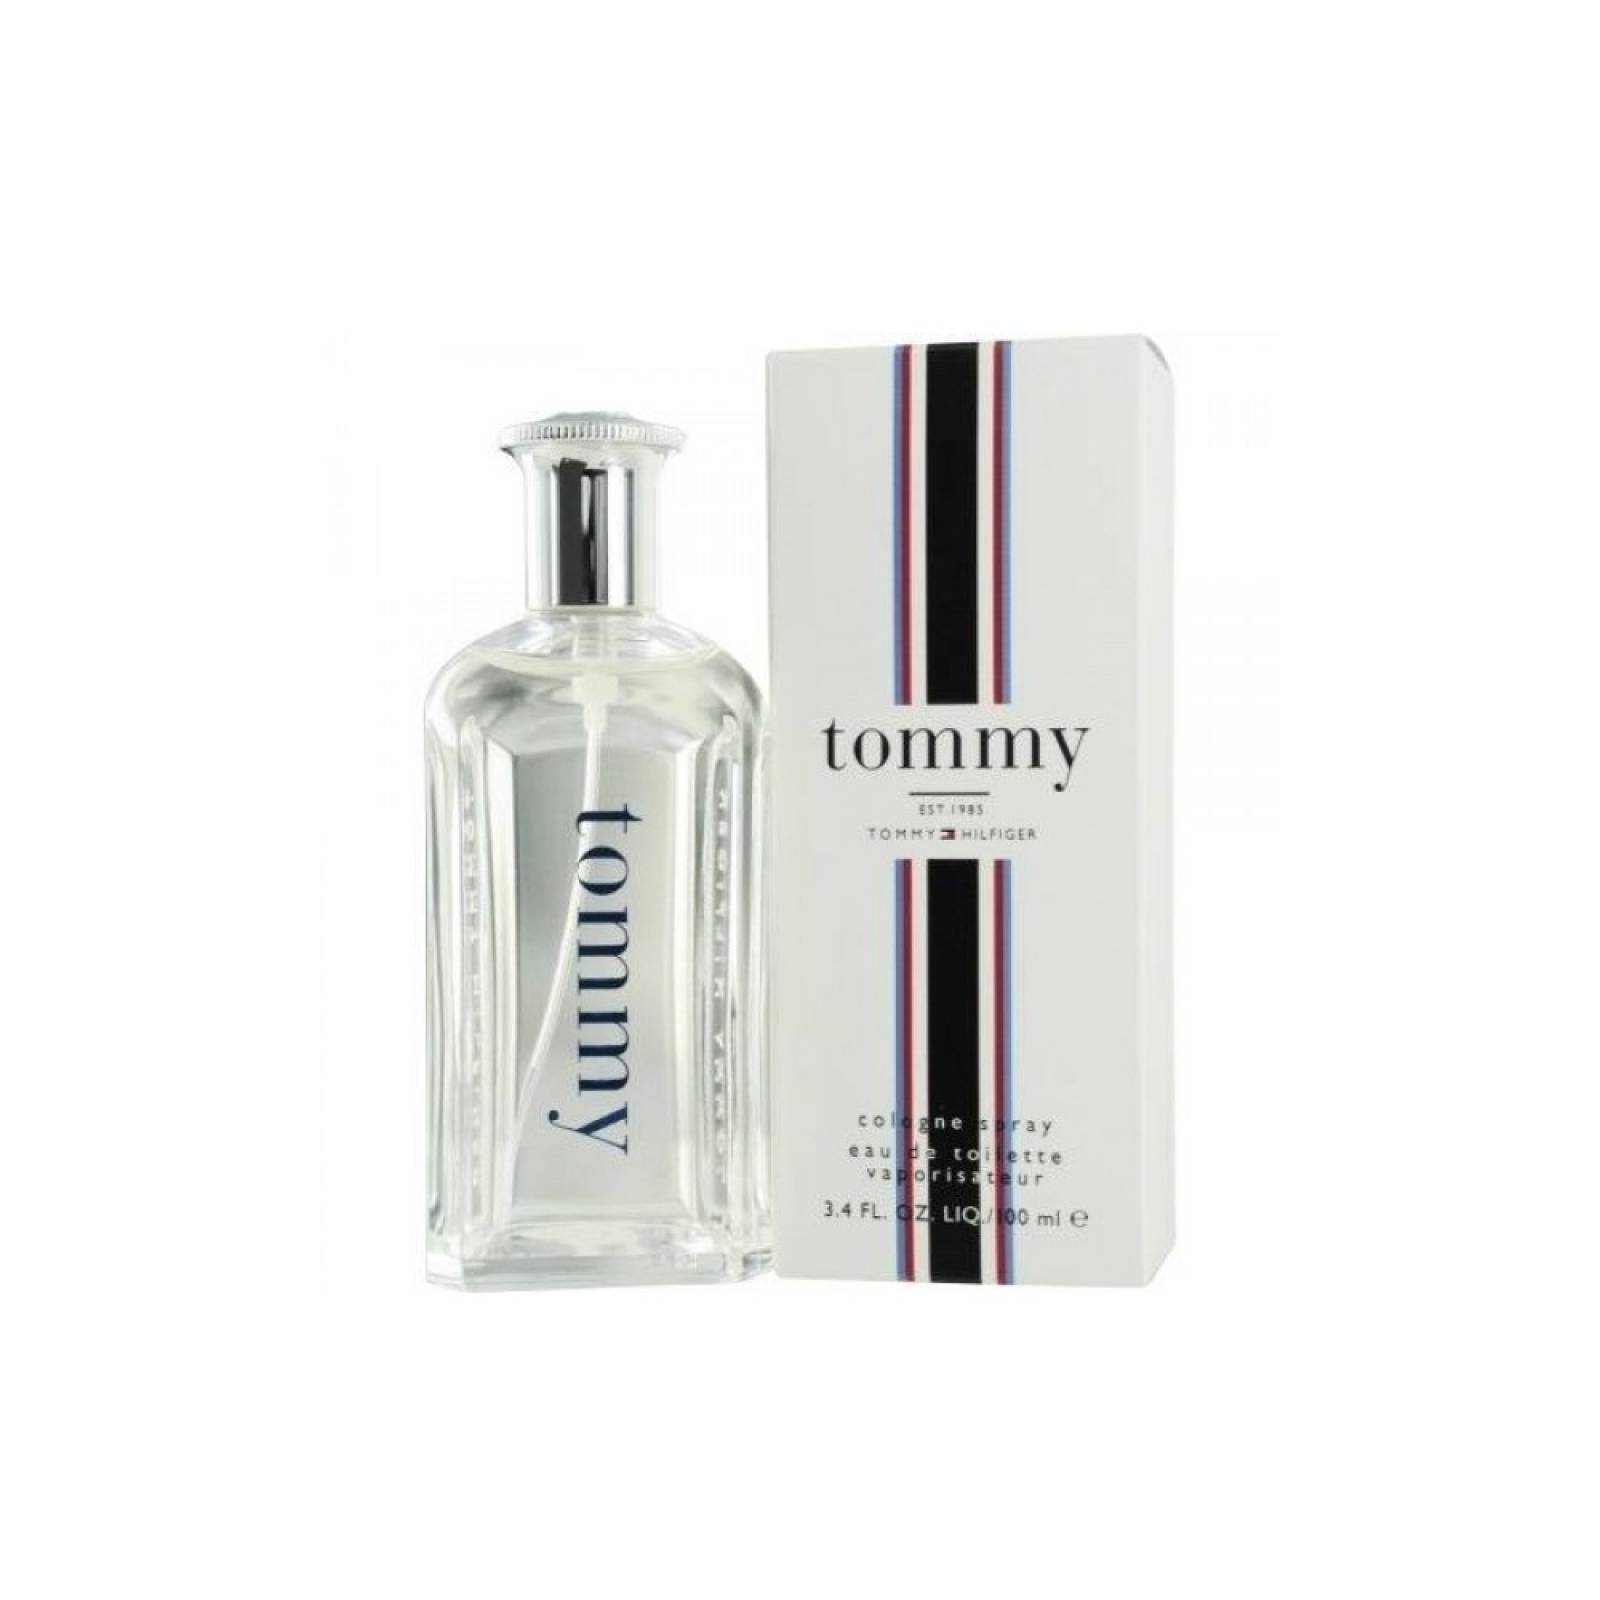 Tommy De Tommy Hilfiger Eau De Toilette 100 ml